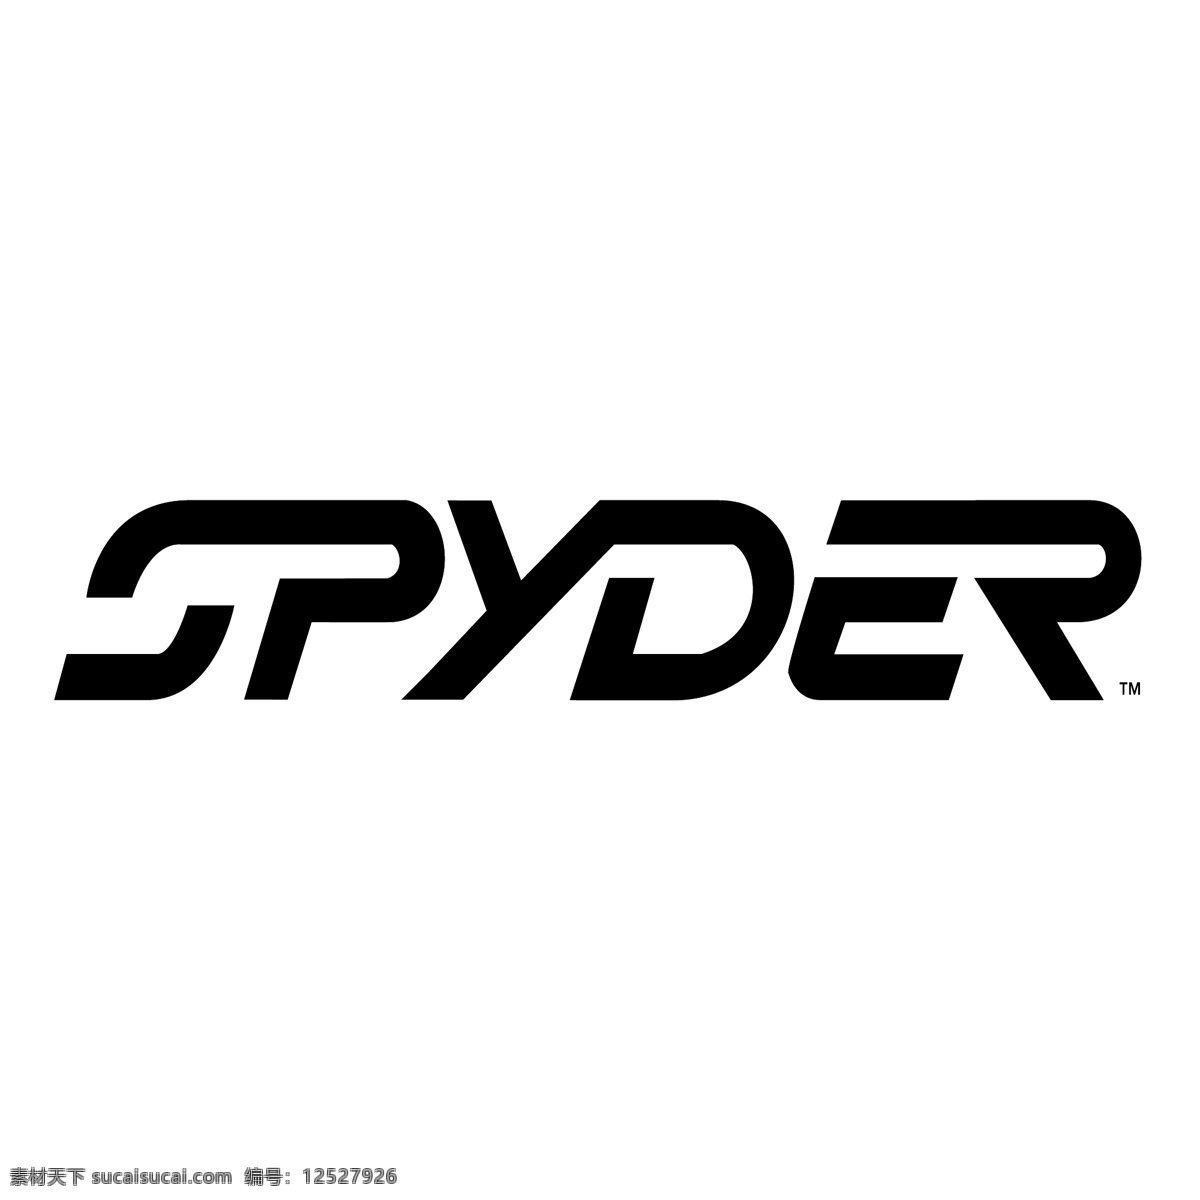 世爵免费下载 spyder 标志 标识为免费 psd源文件 logo设计